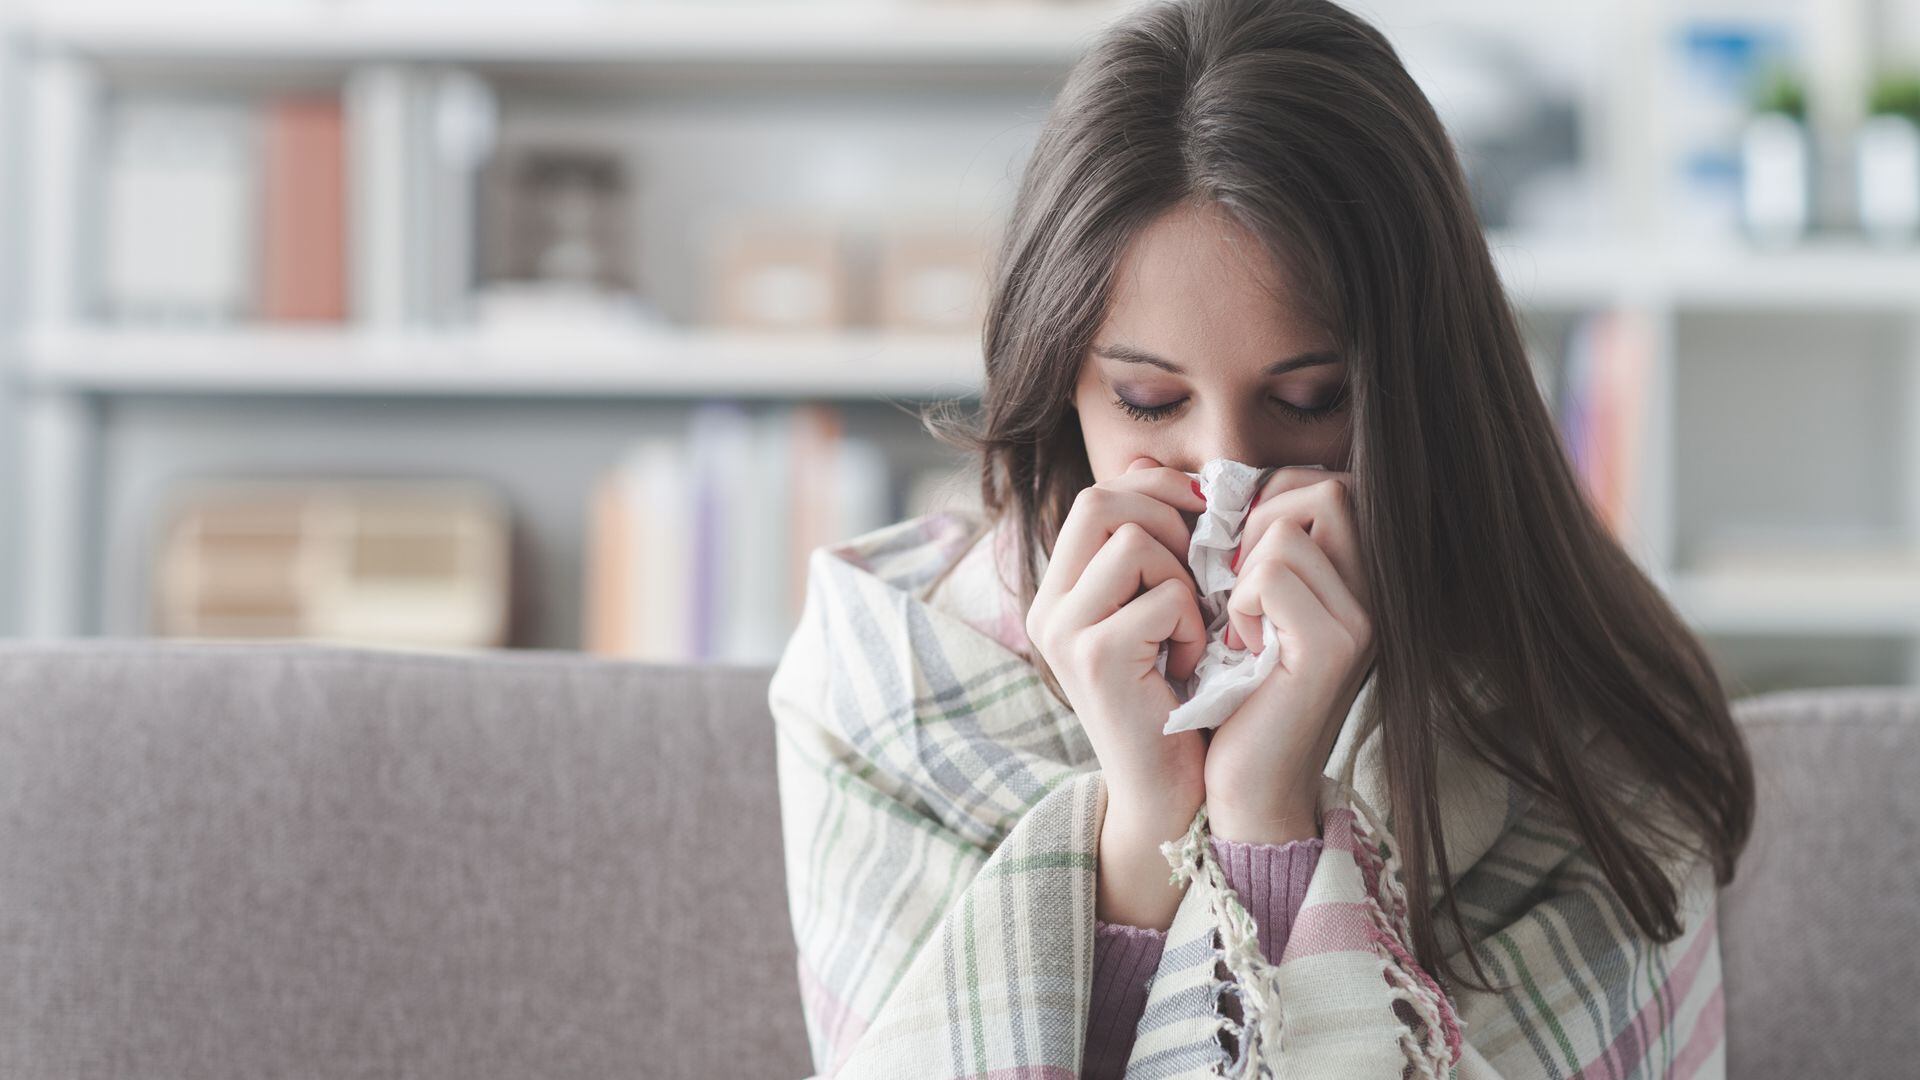 La congestión nasal, el dolor de garganta, y los estornudos son más frecuentes en las personas que tienen resfríos que en las que tienen gripe